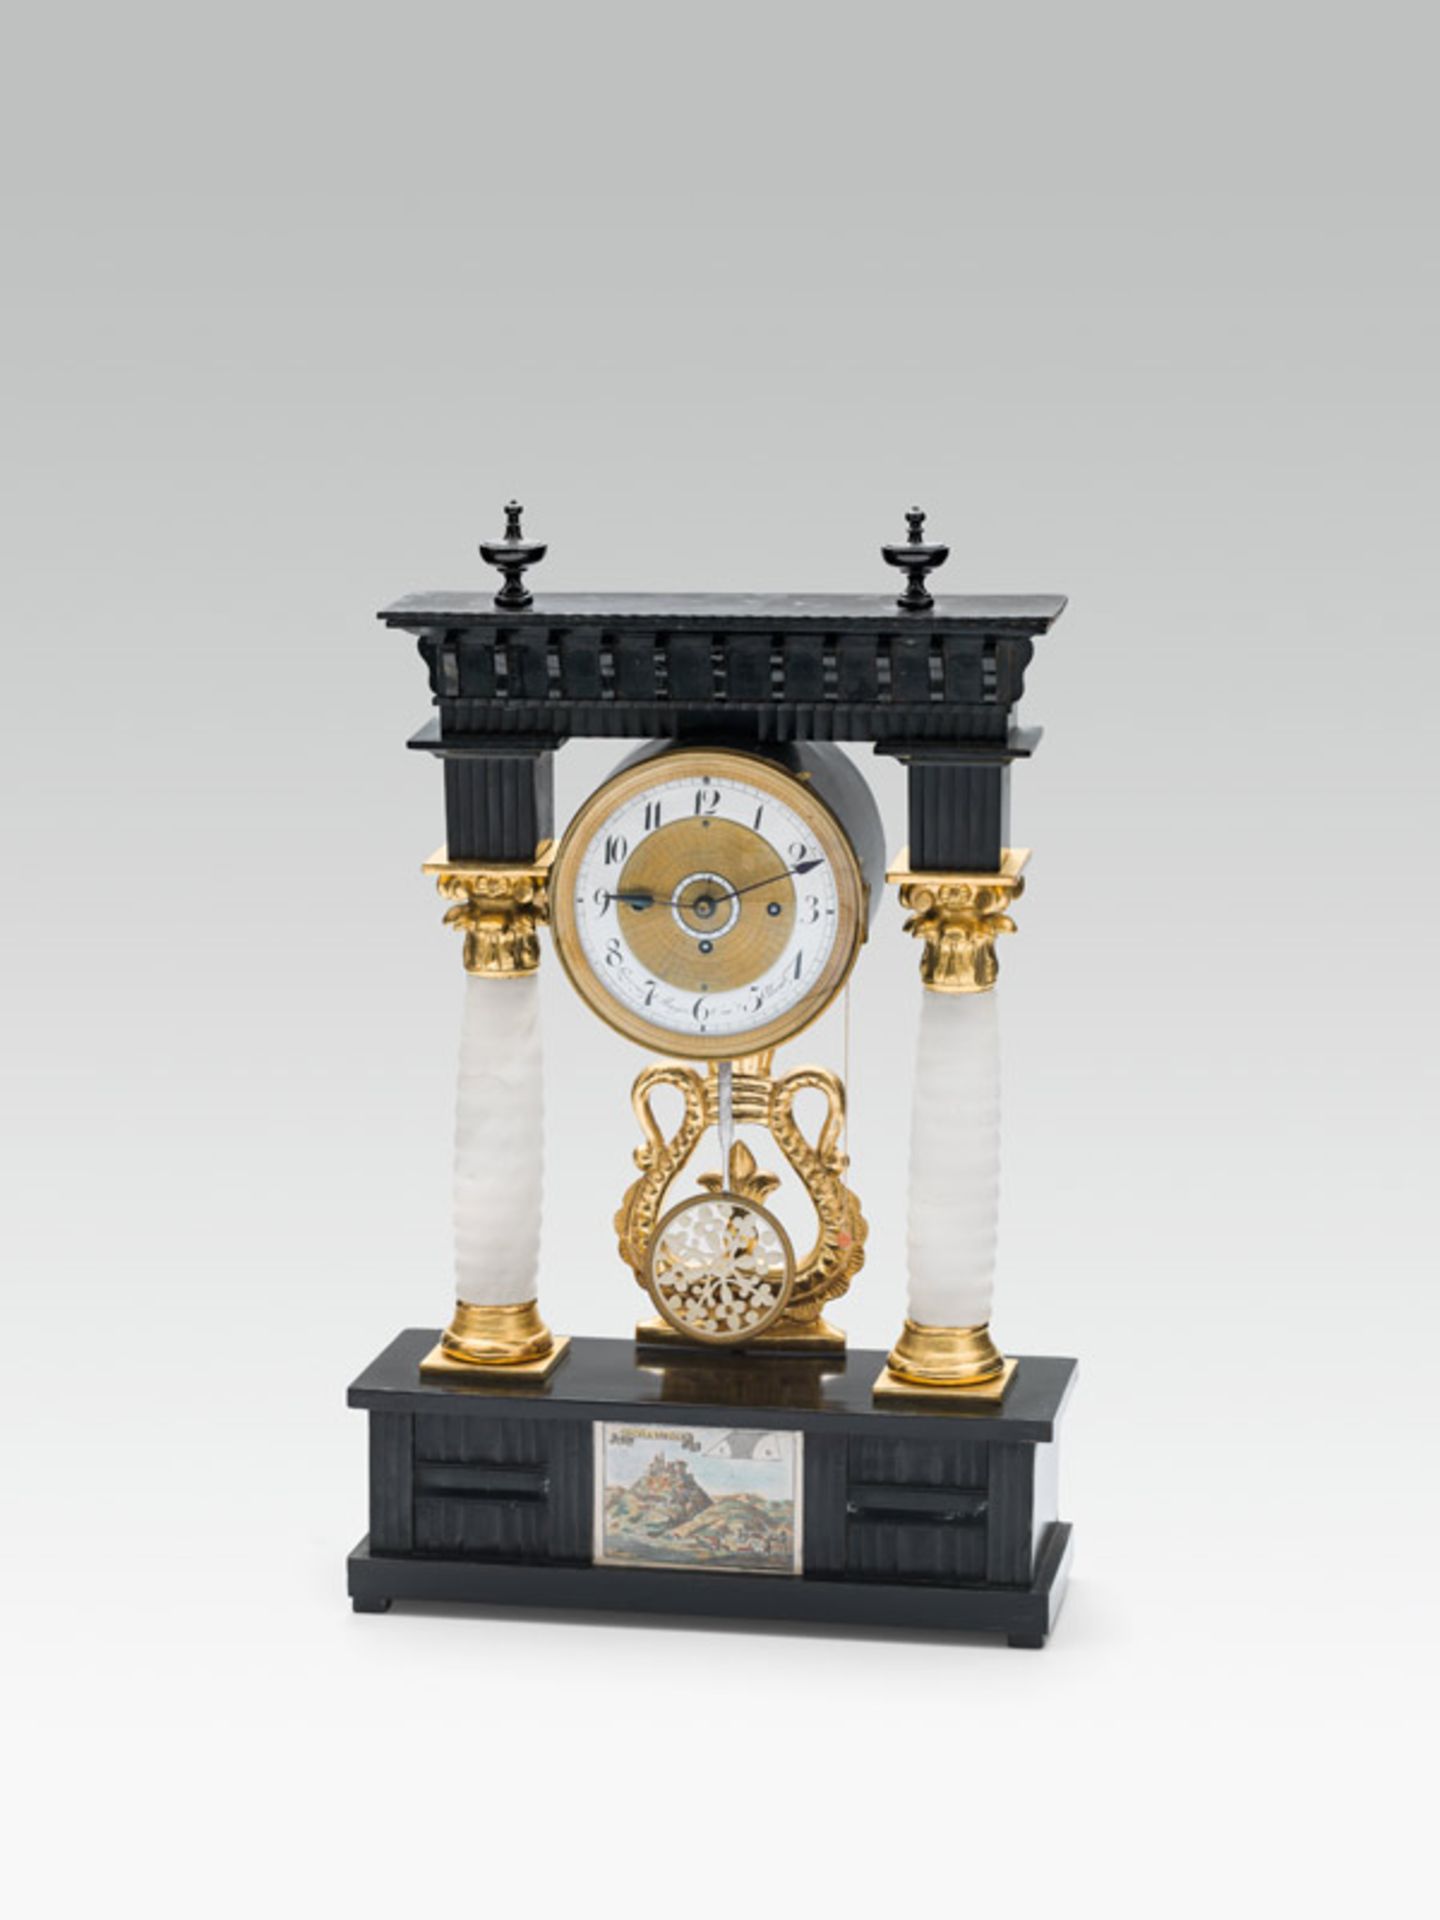 Viennese clock, Vienna, c. 1840/45